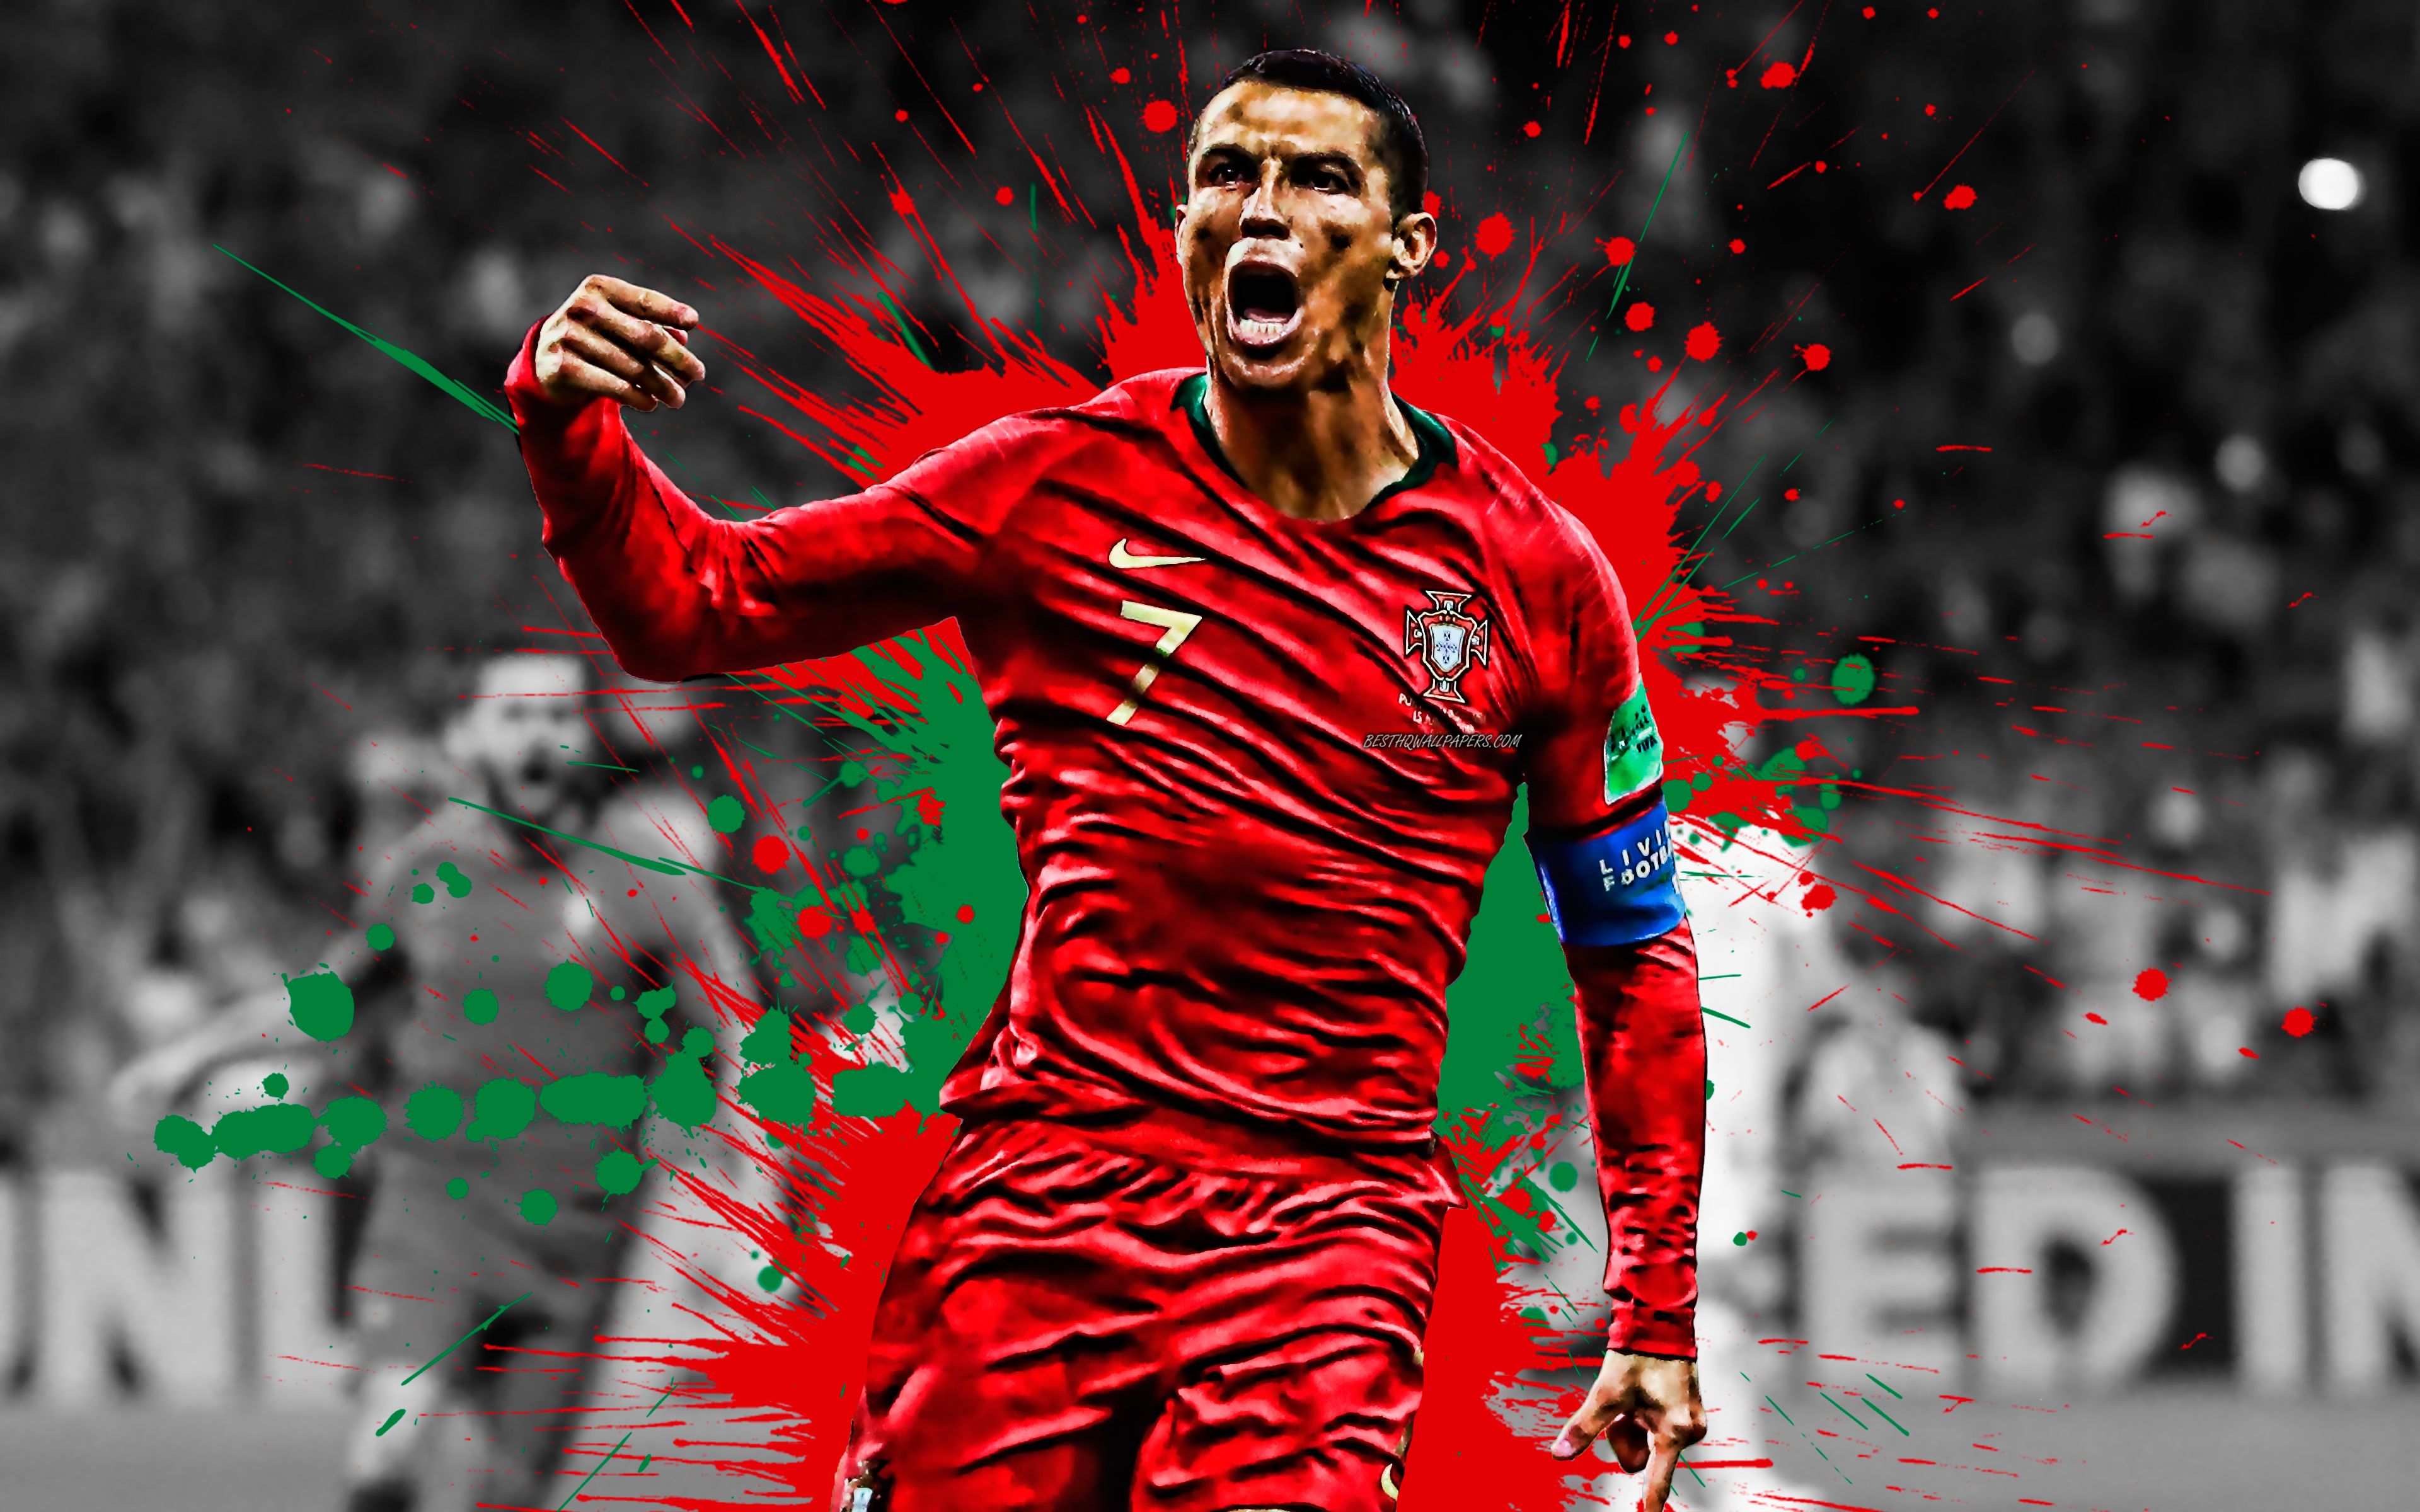 3840x2400 Cristiano Ronaldo Wallpaper and Background - Download HD Wallpaper of Cristiano Ronaldo on WallpaperBat